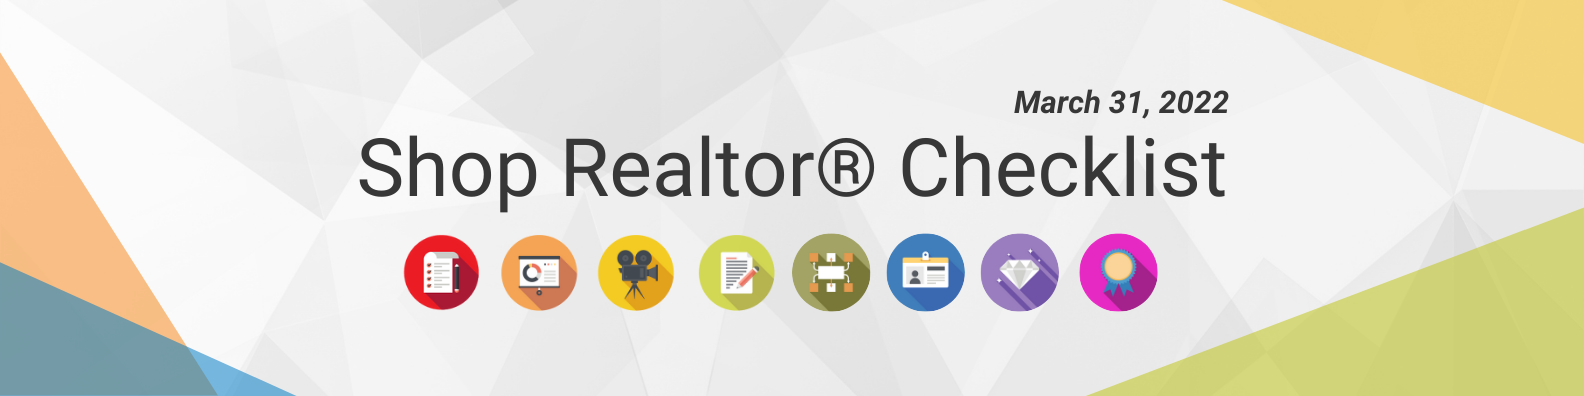 Shop Realtor® Checklist March 31